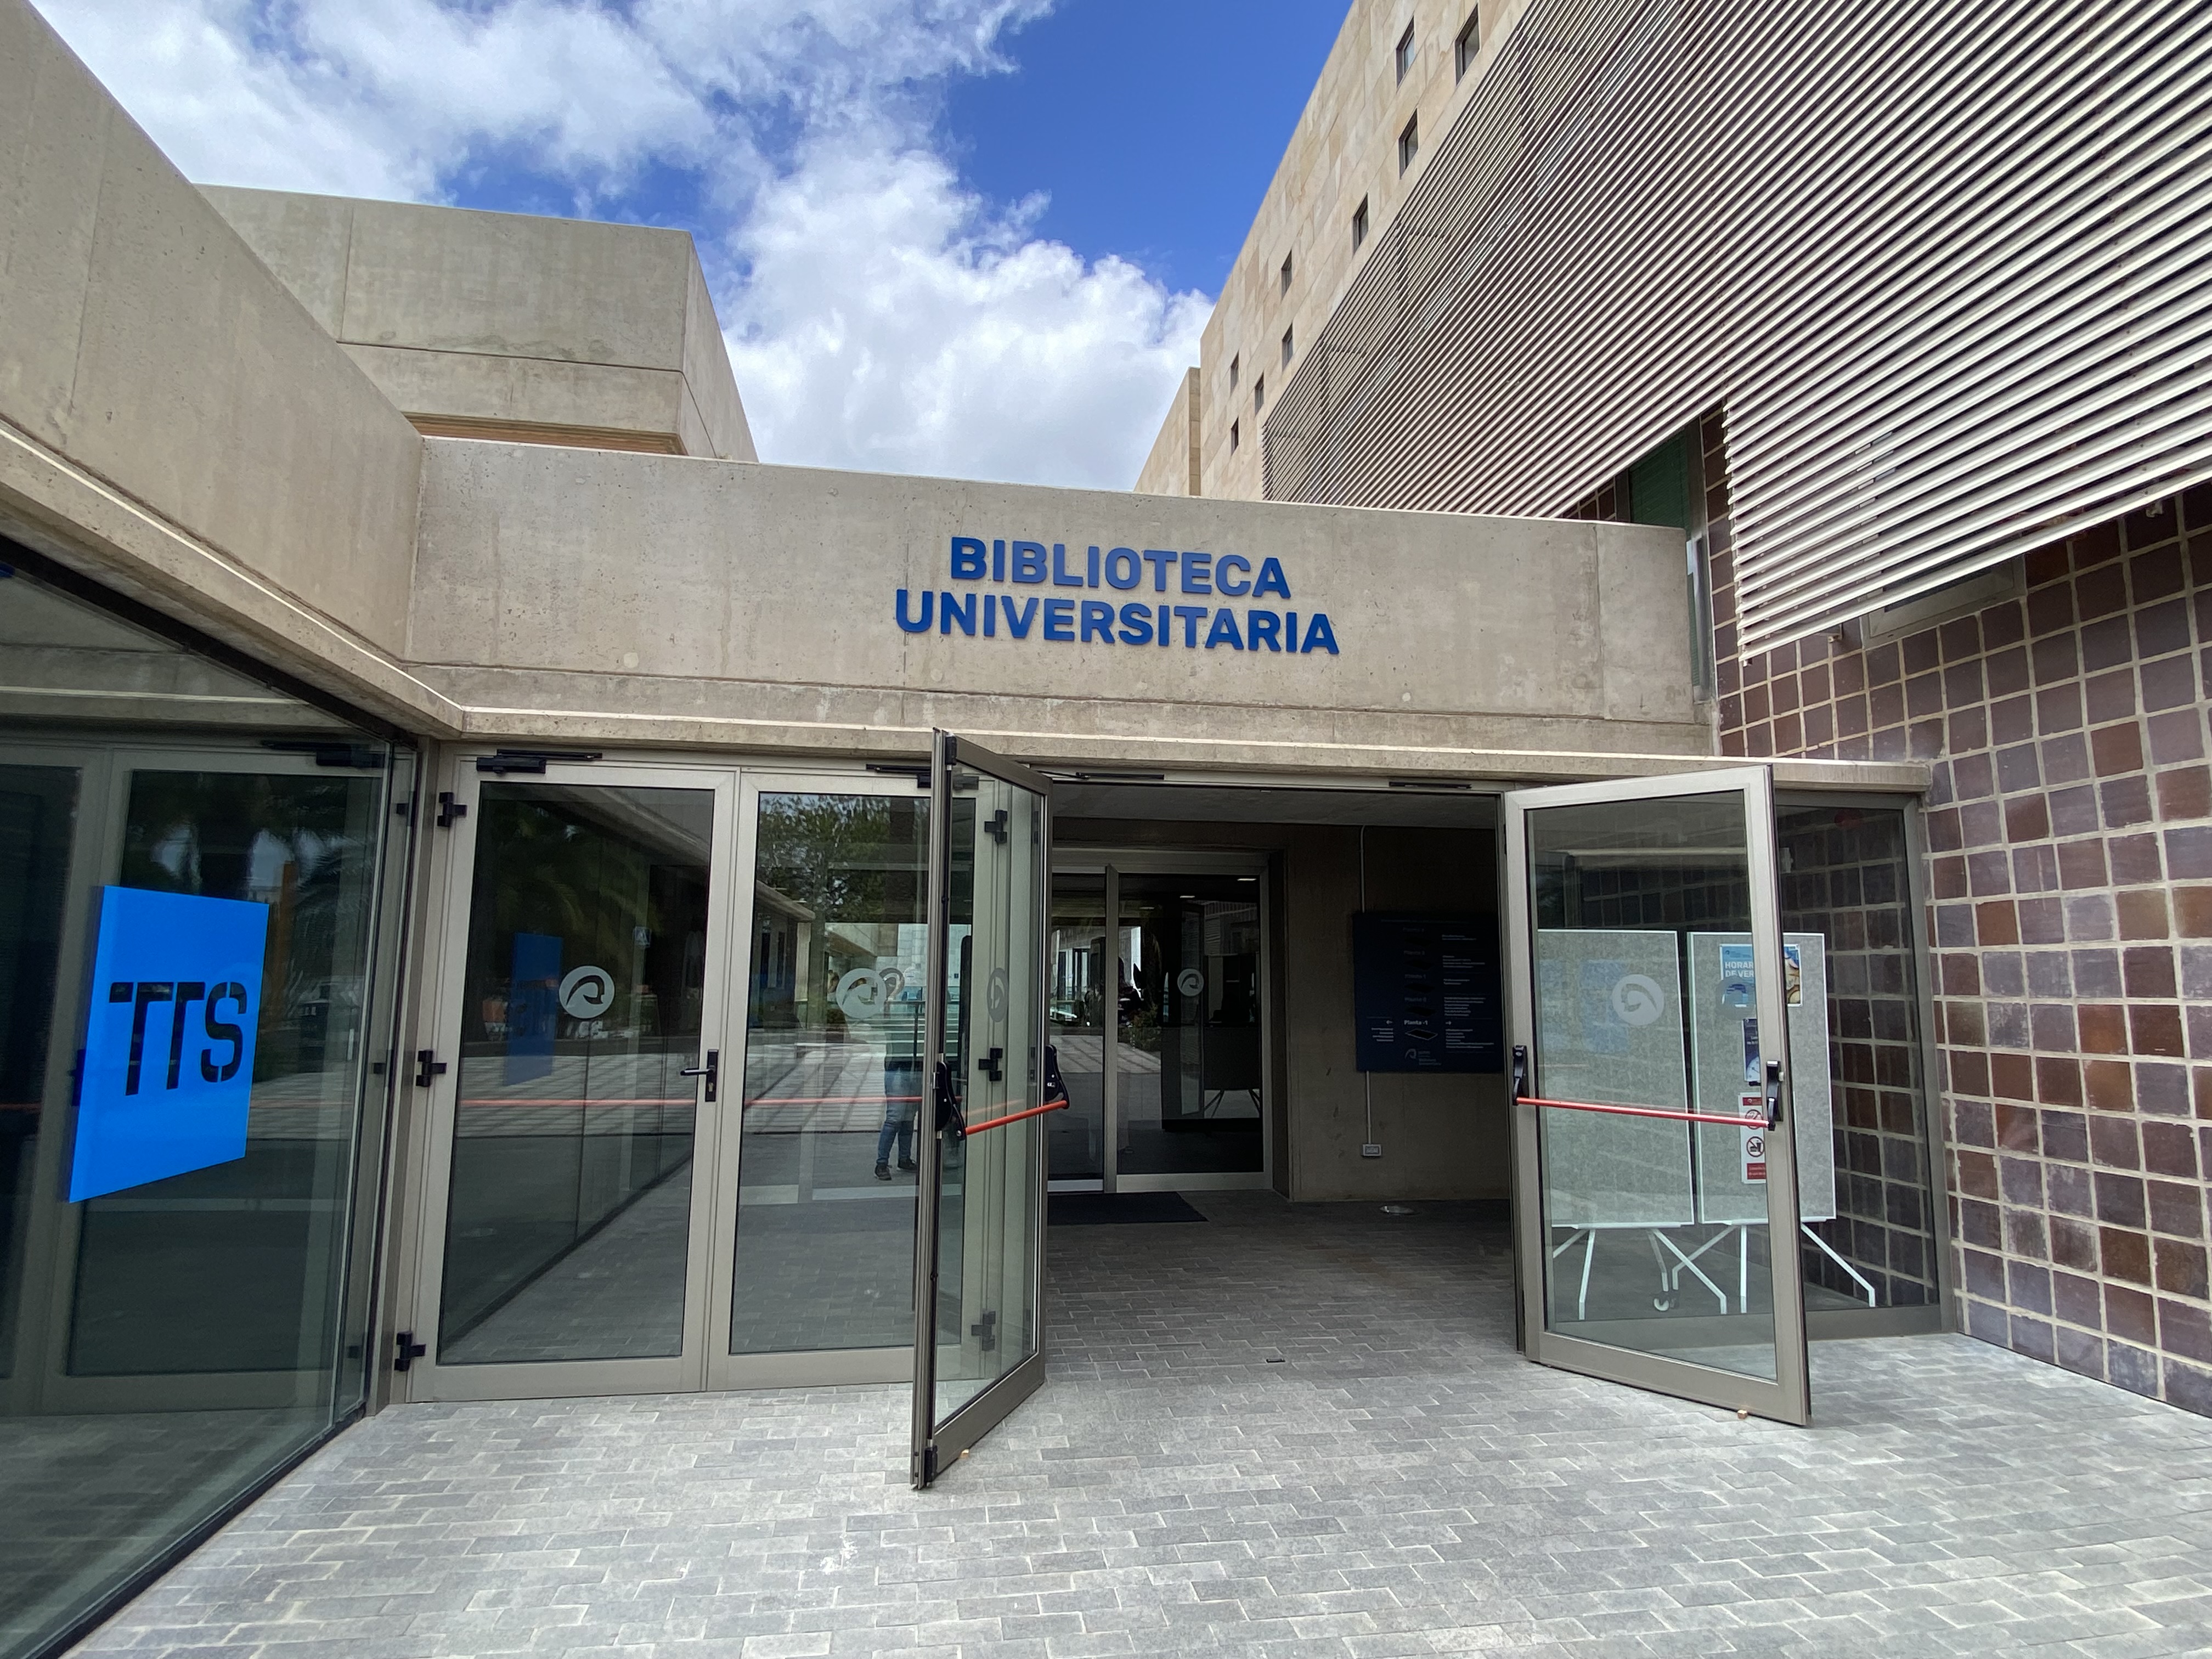 Nueva entrada del Edificio Central de la Biblioteca Universitaria